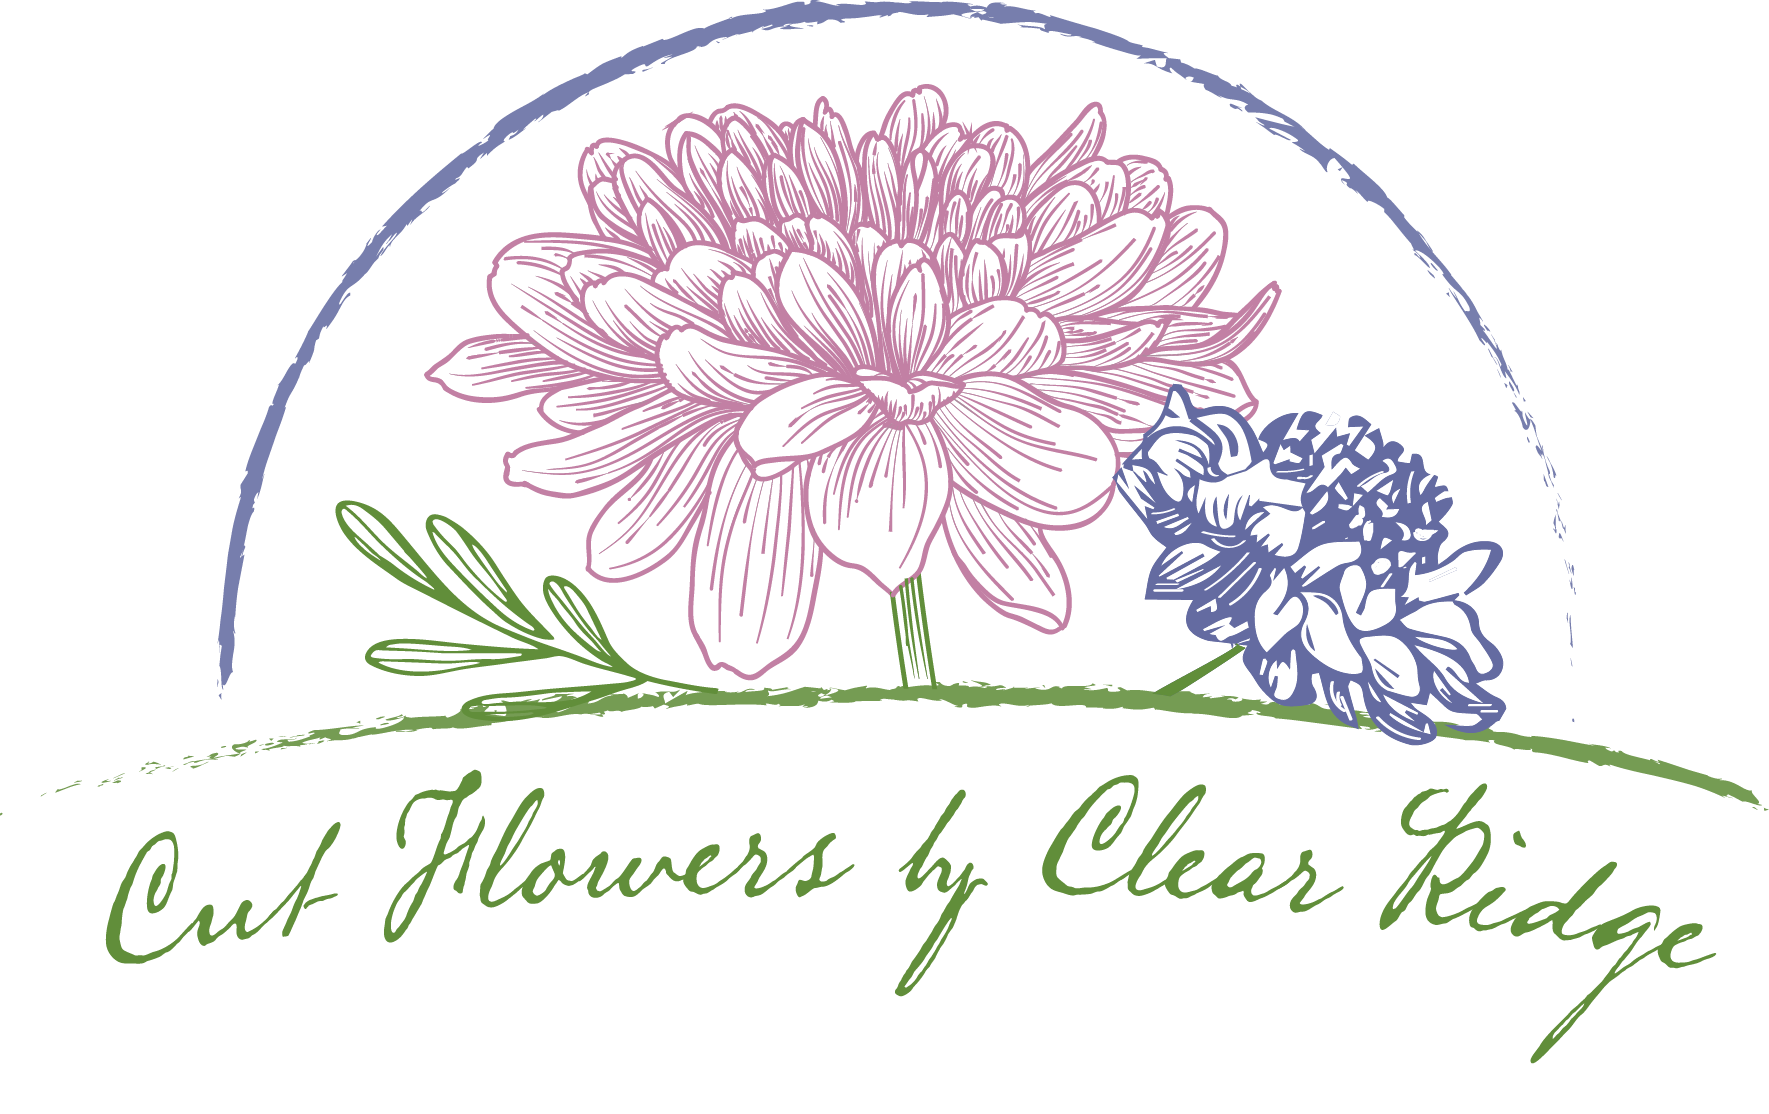 Cut Flowers by Clear Ridge